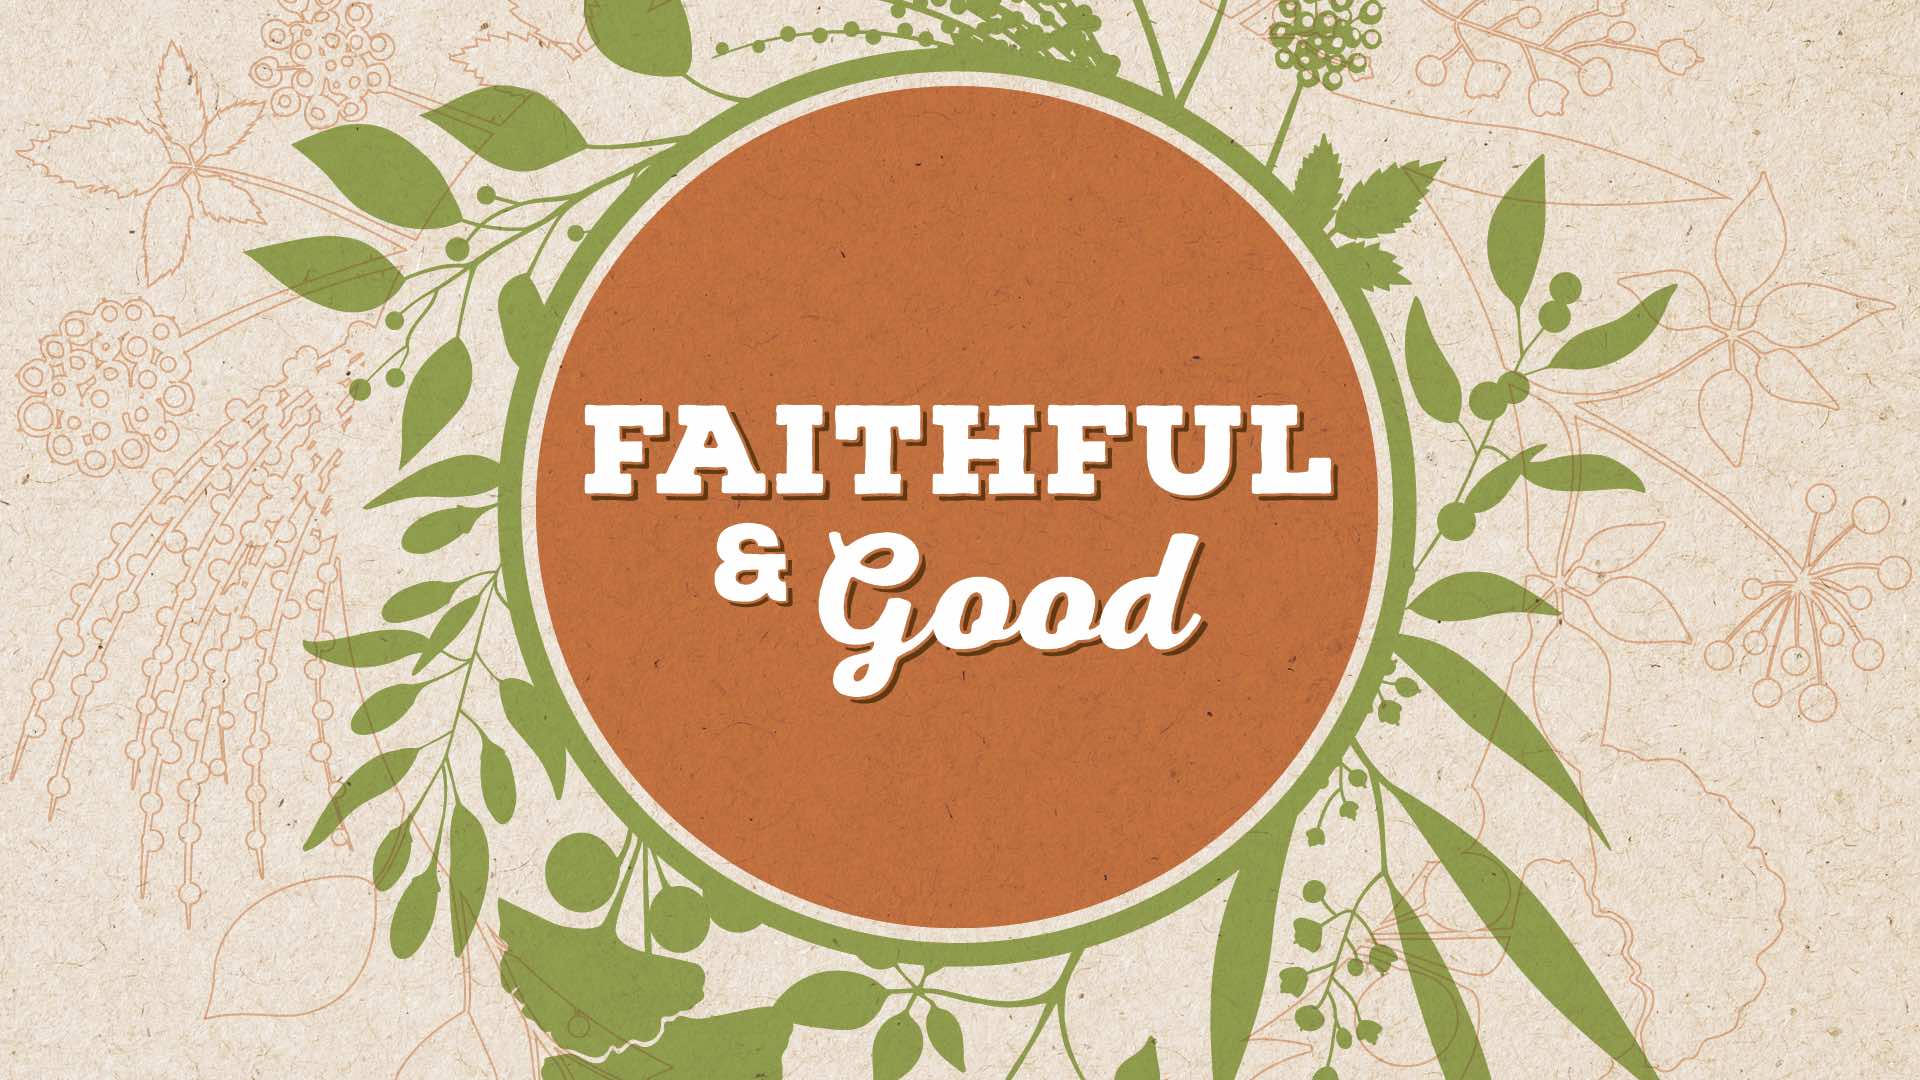 Faithful & Good